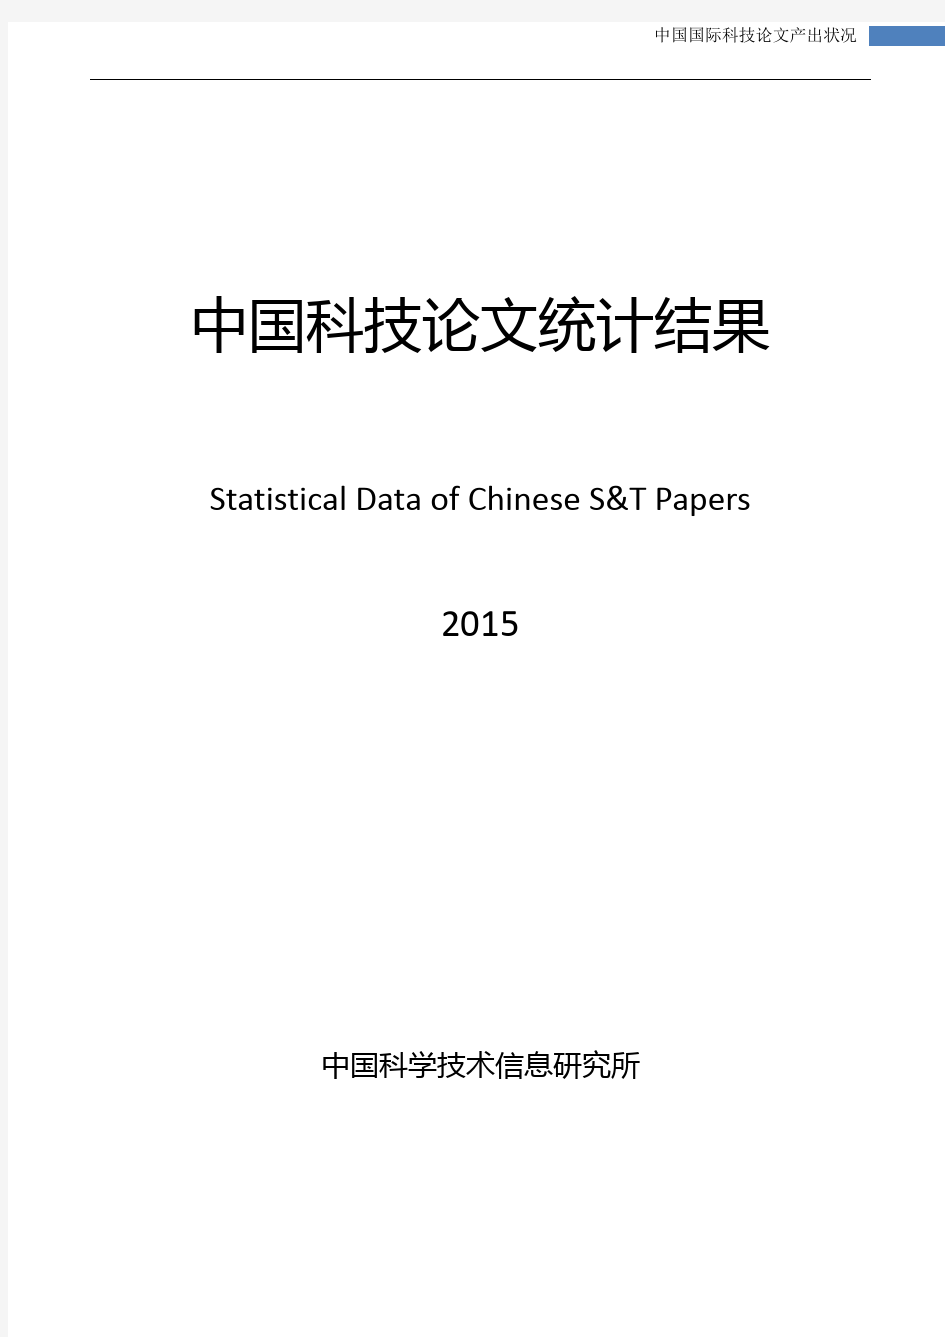 中国科技论文统计结果-2015_国际